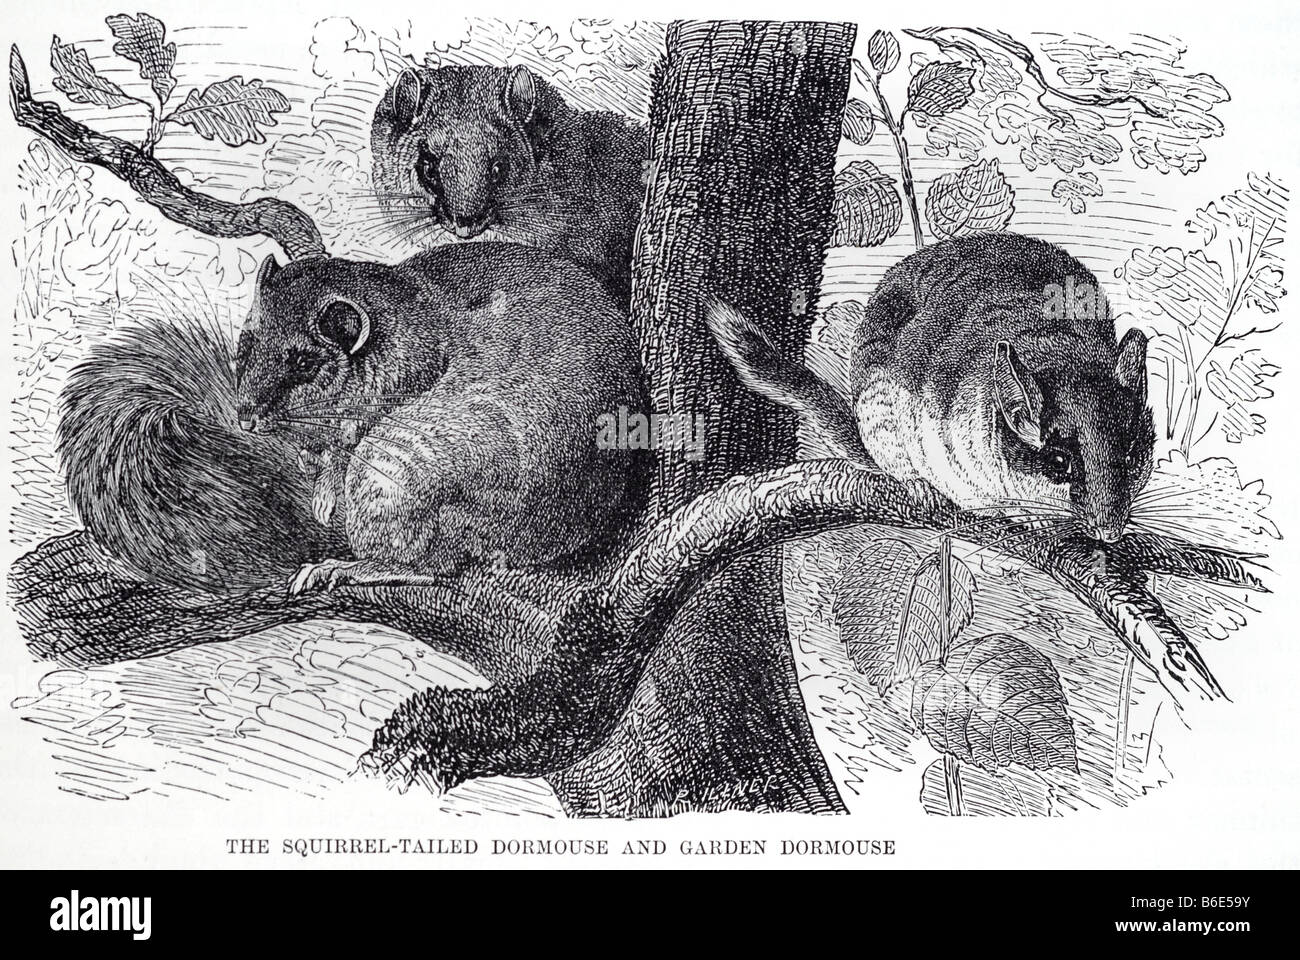 Eichhörnchen Siebenschläfer Garten Muscardinus Avellanarius Linnaeus 1758 ist ein kleines Säugetier. Es ist der einzige lebende Arten aktueller Classif Stockfoto